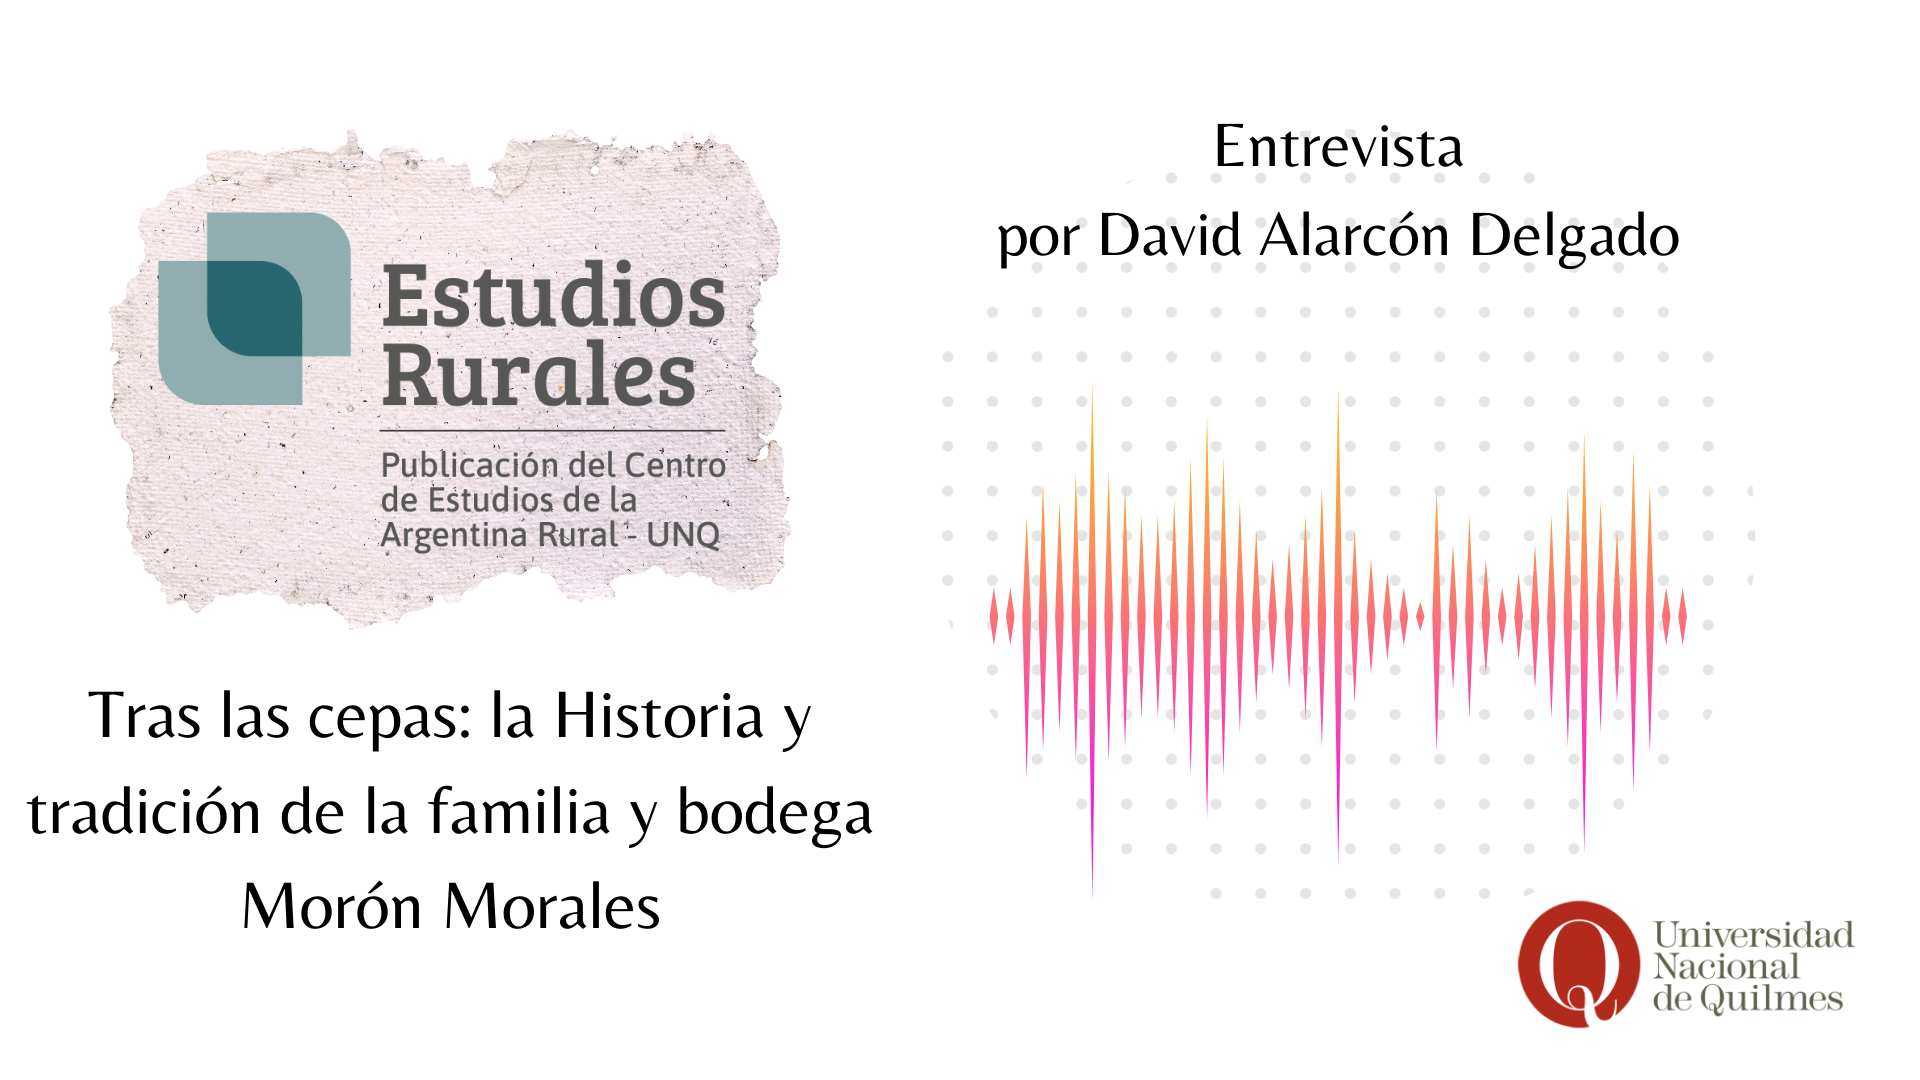 Tras las cepas: la historia y tradición de la familia y bodega Morón Morales